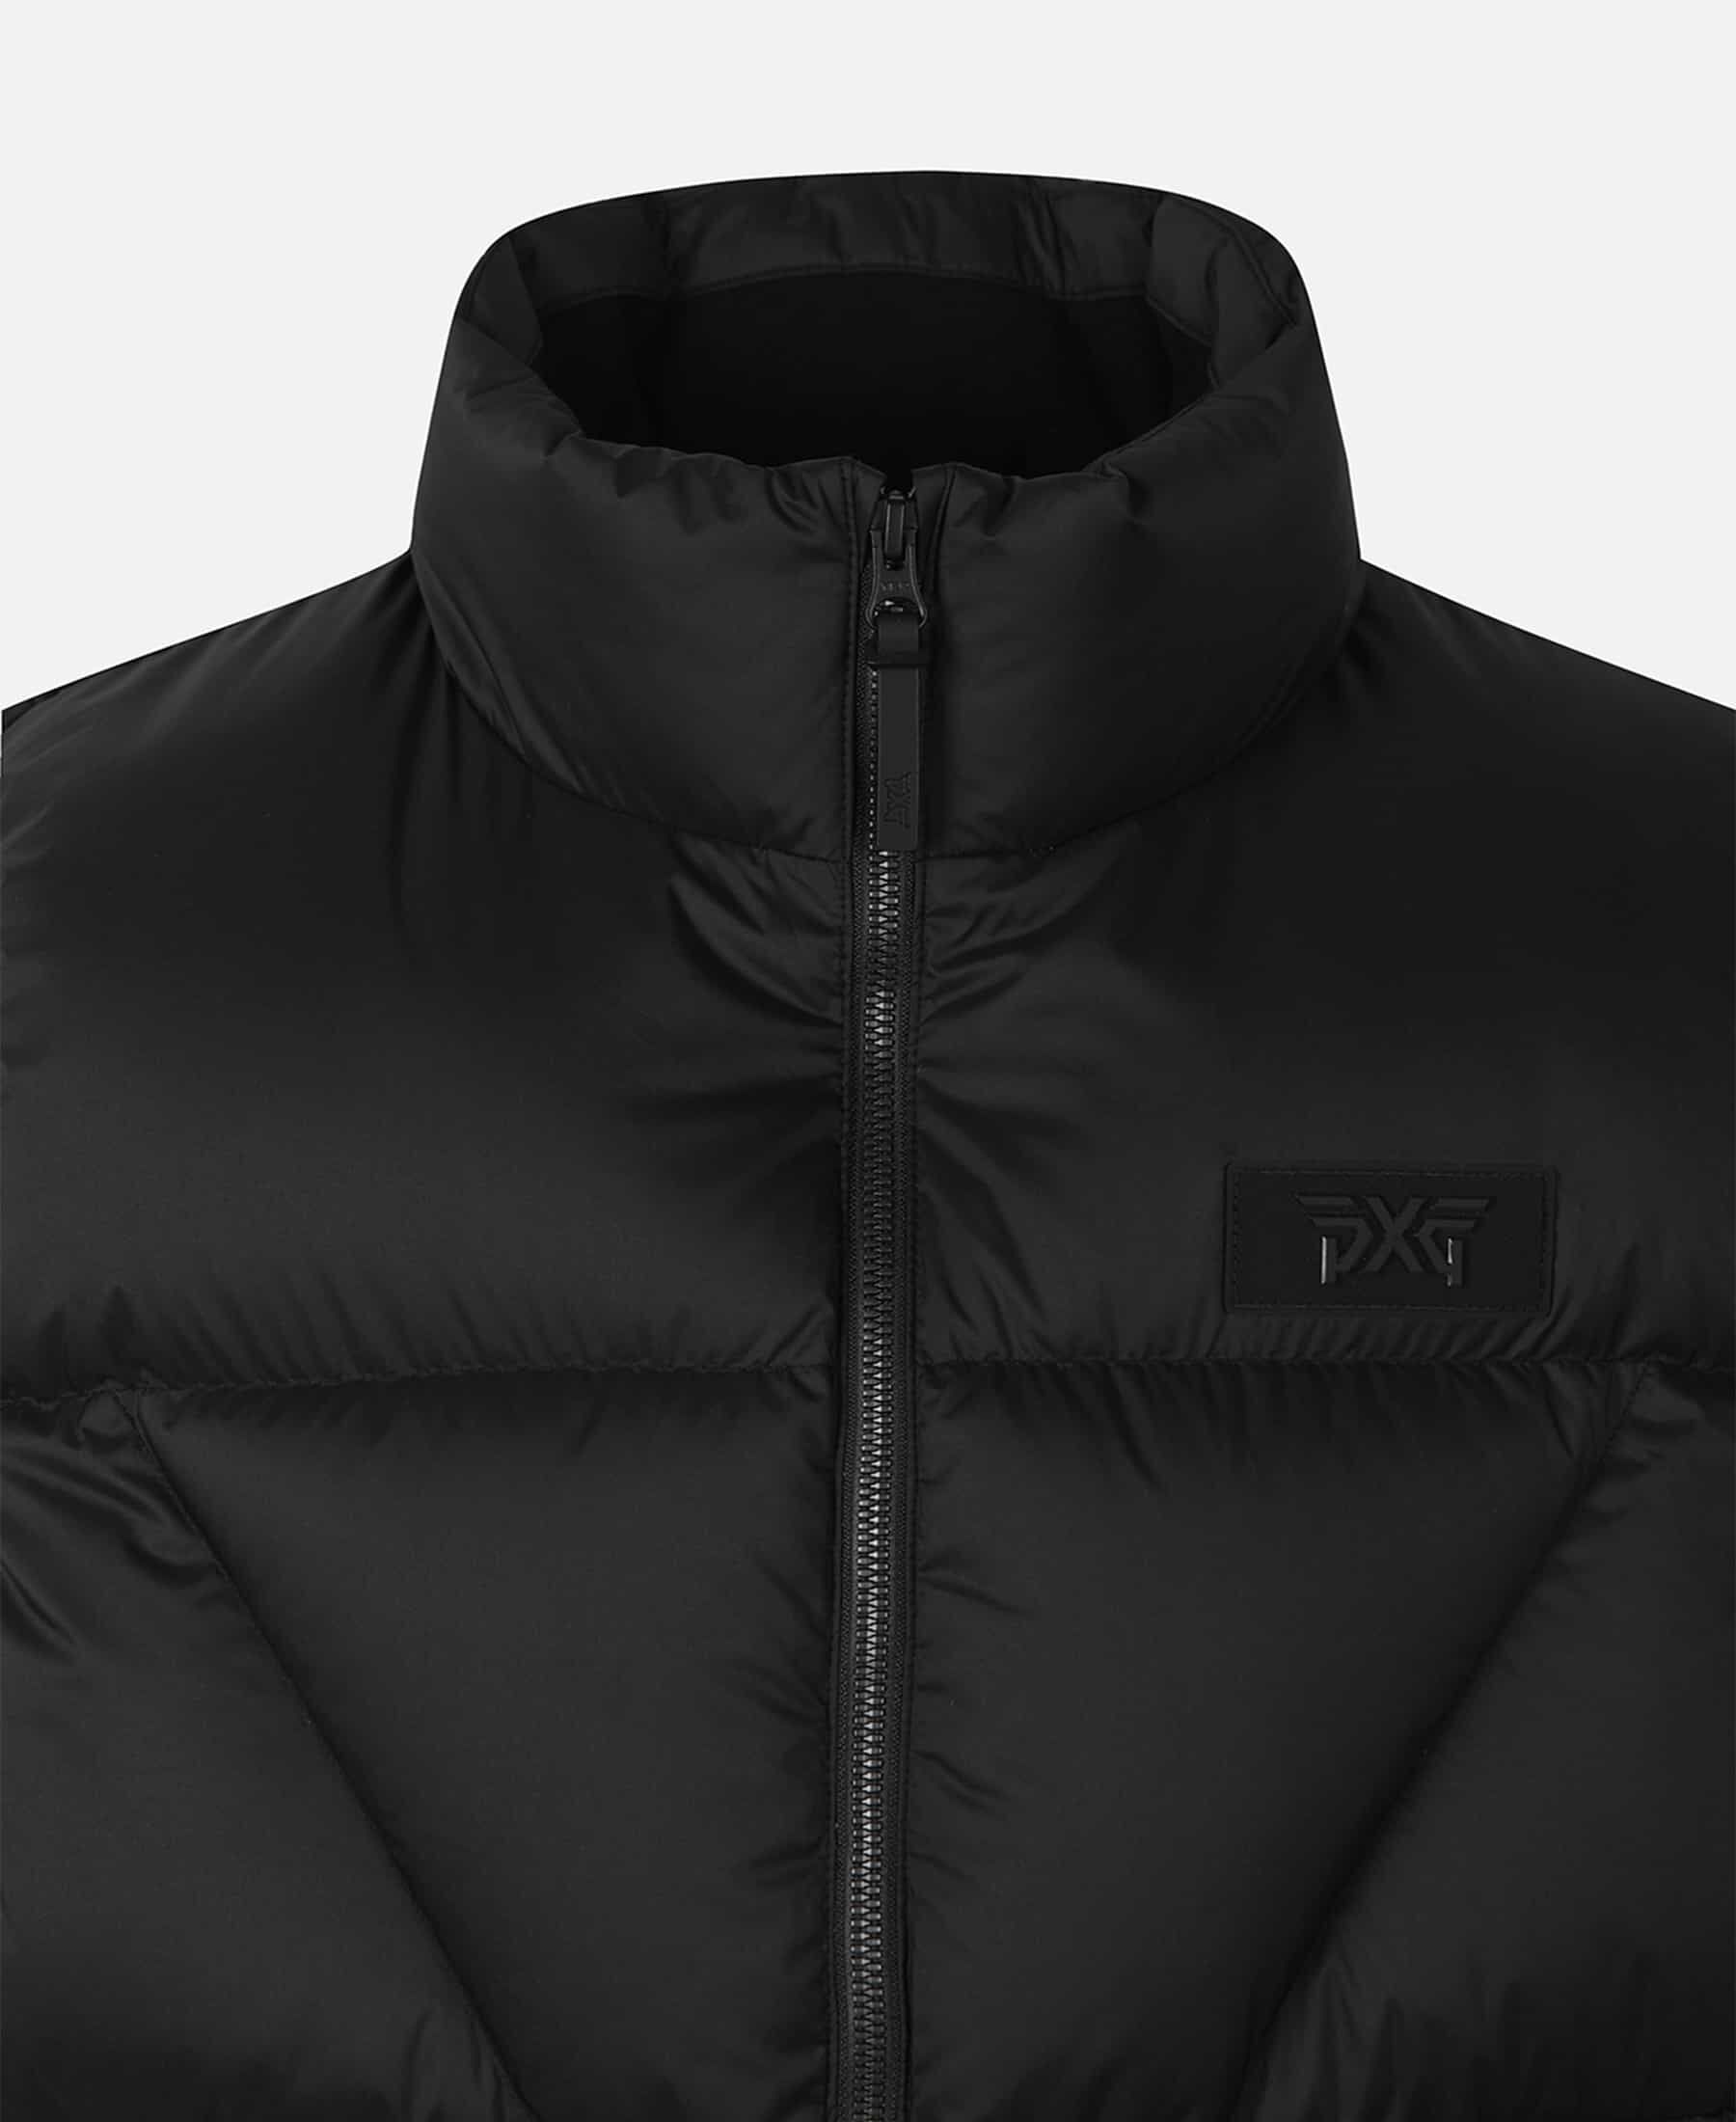 Shop Men's Golf アウター - Vests, Jackets and Coats | PXG JP